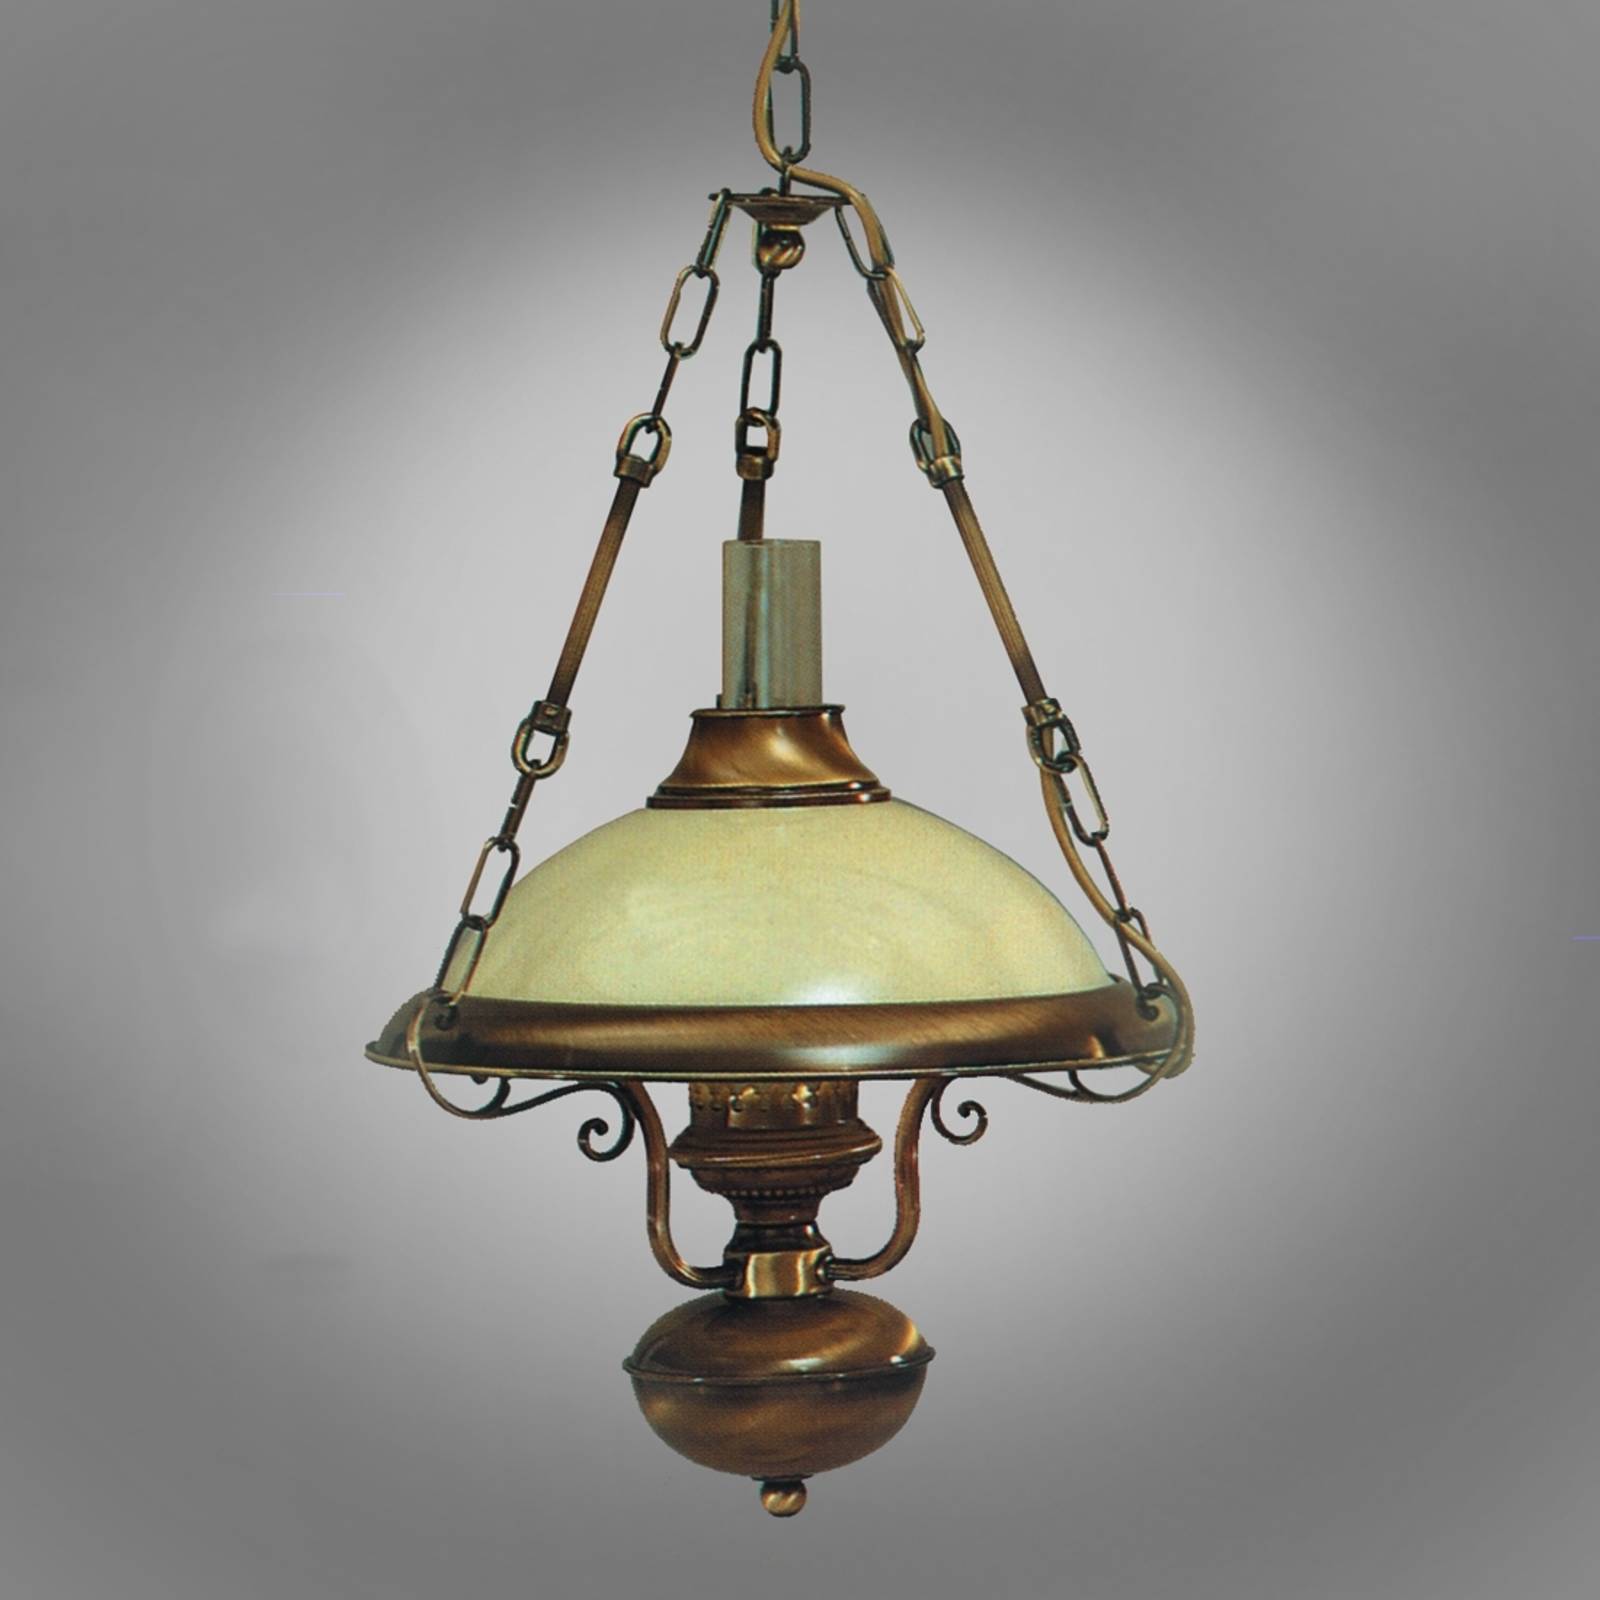 Orion függő lámpa valentina antik kialakítás, 35cm